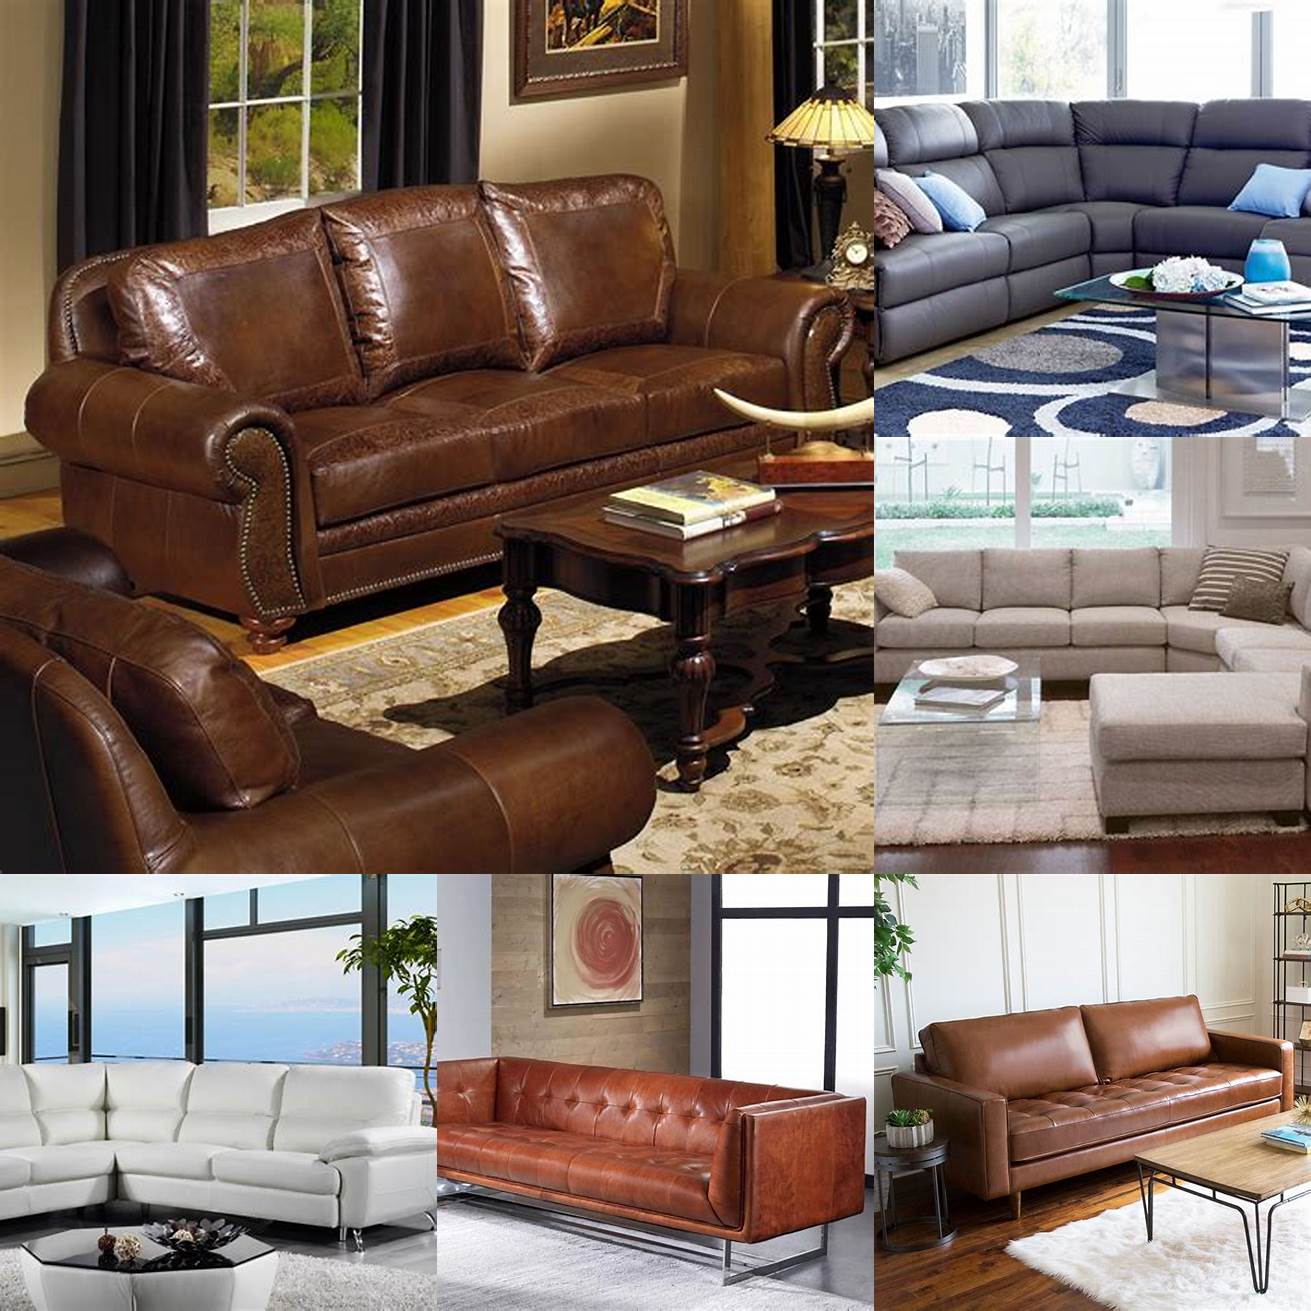 A leather lounge sofa